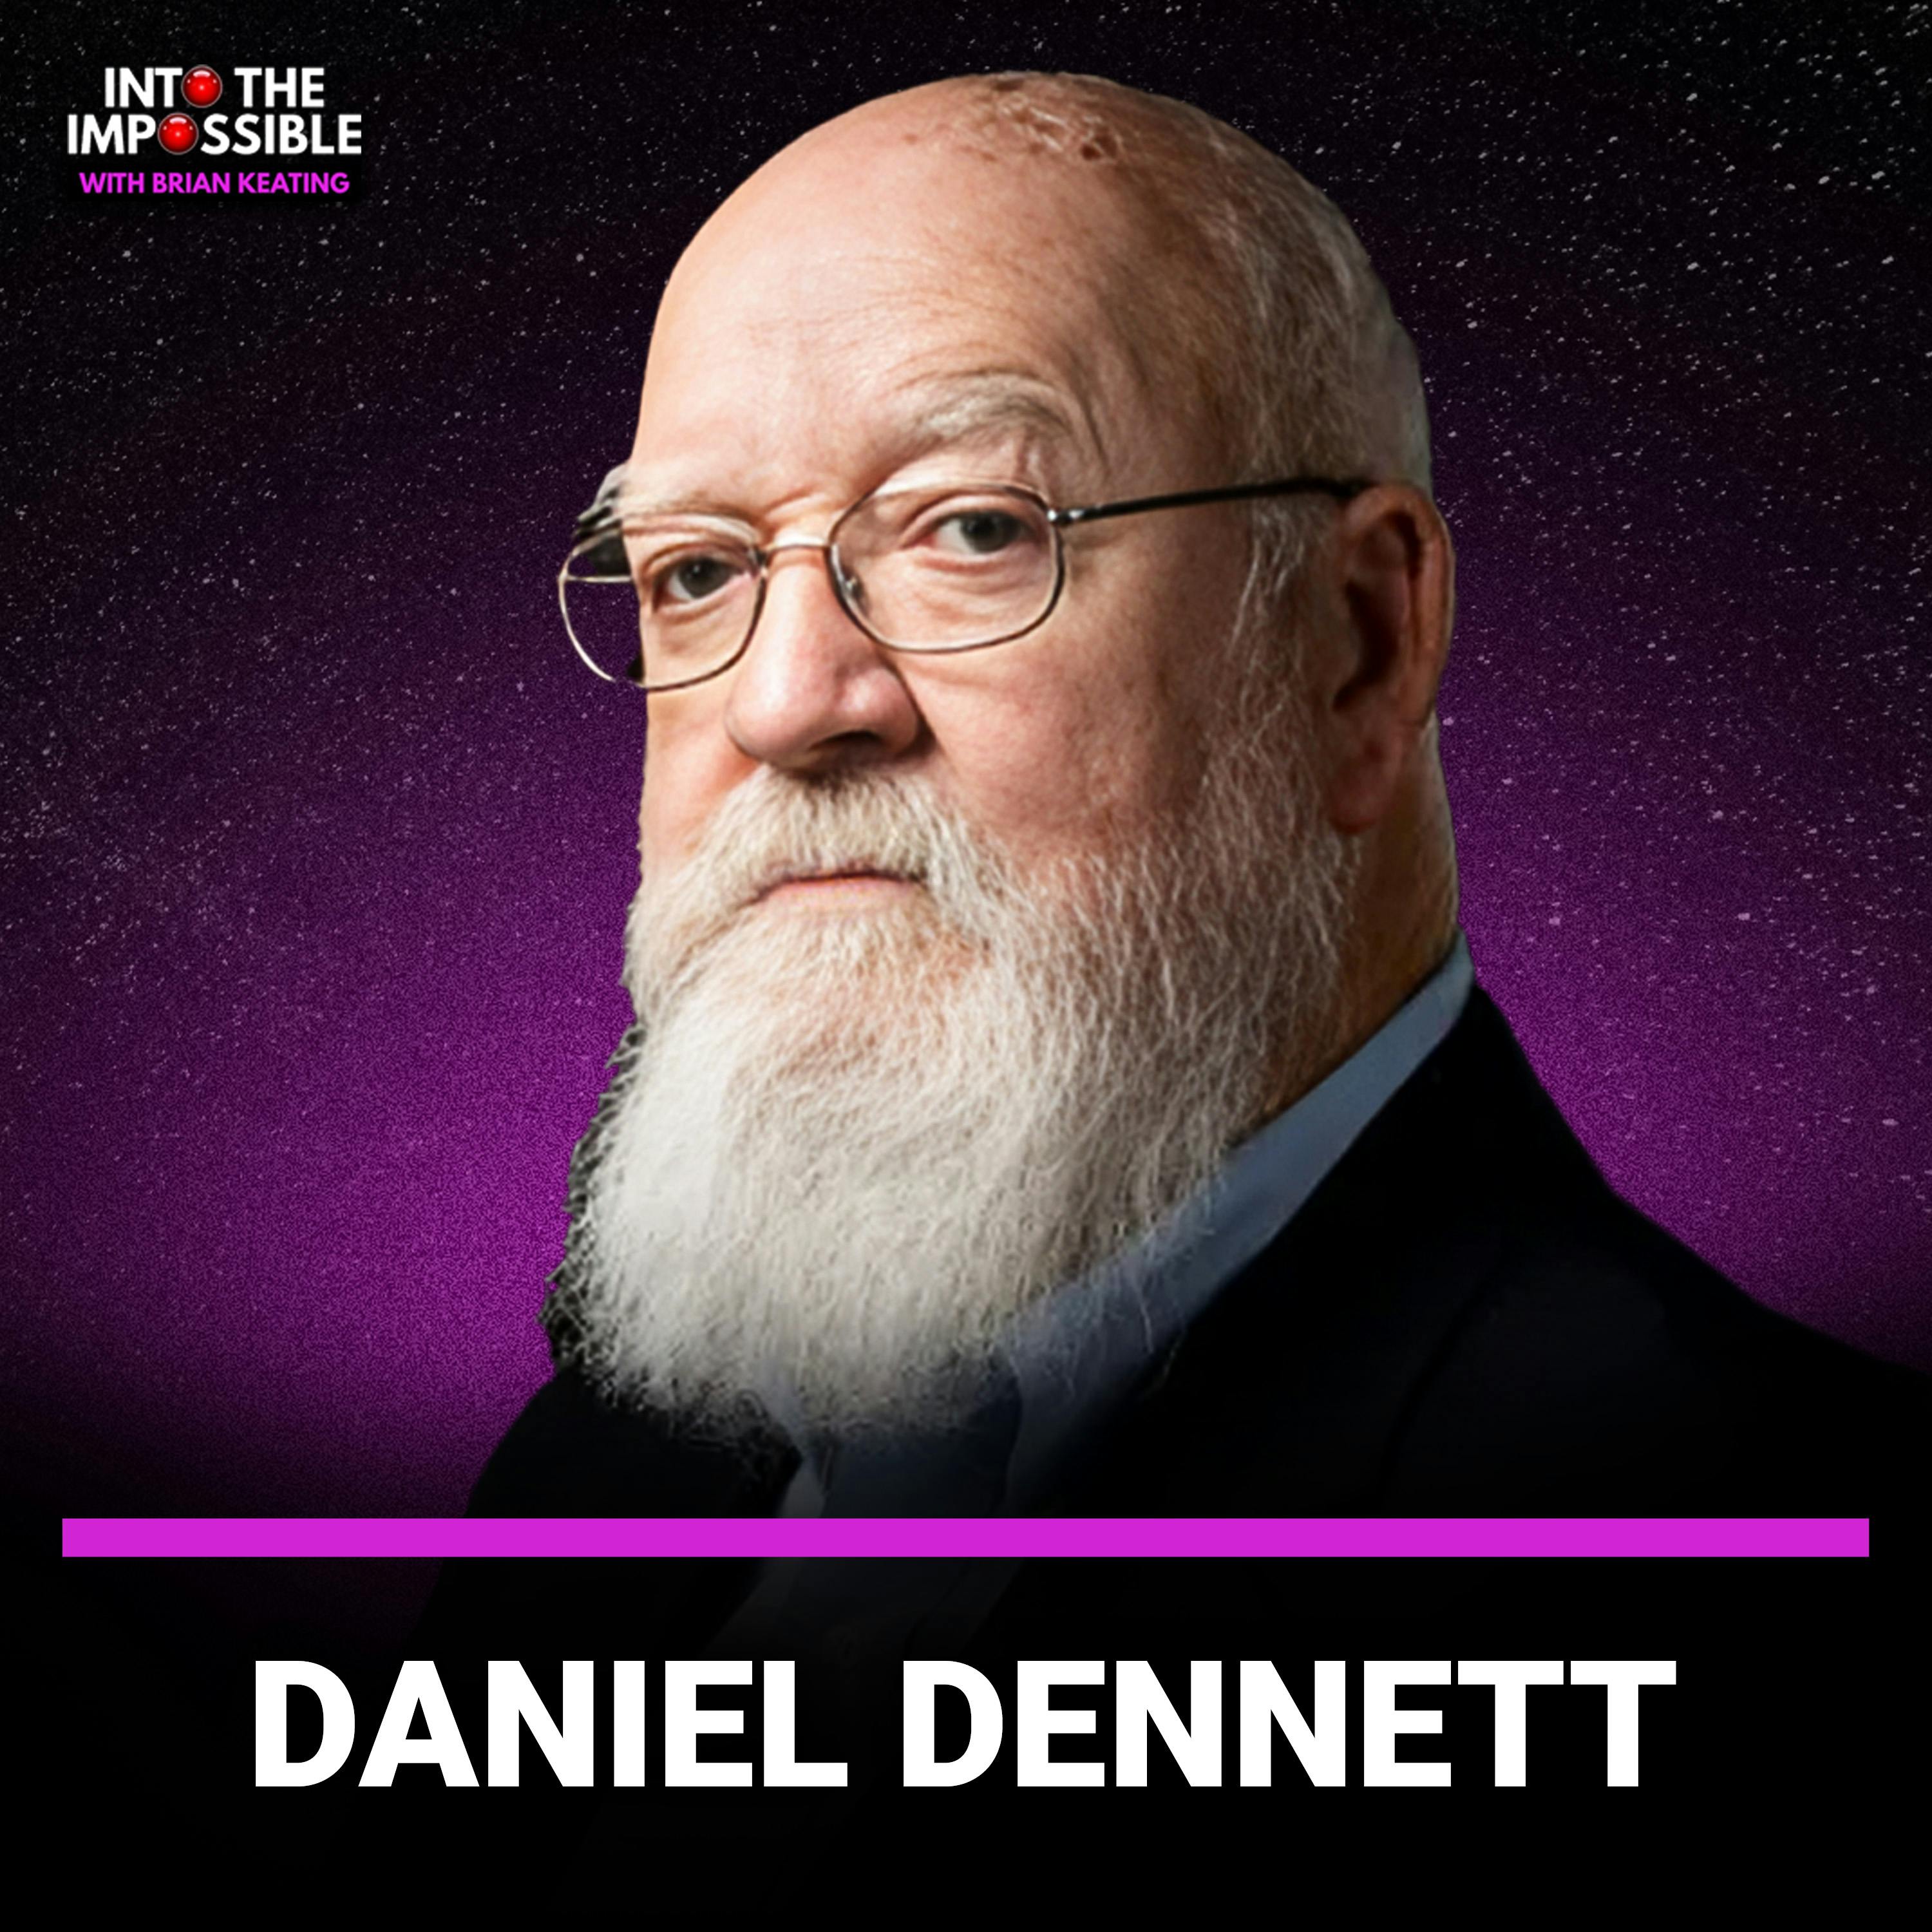 Daniel Dennett: Do We Have Free Will?